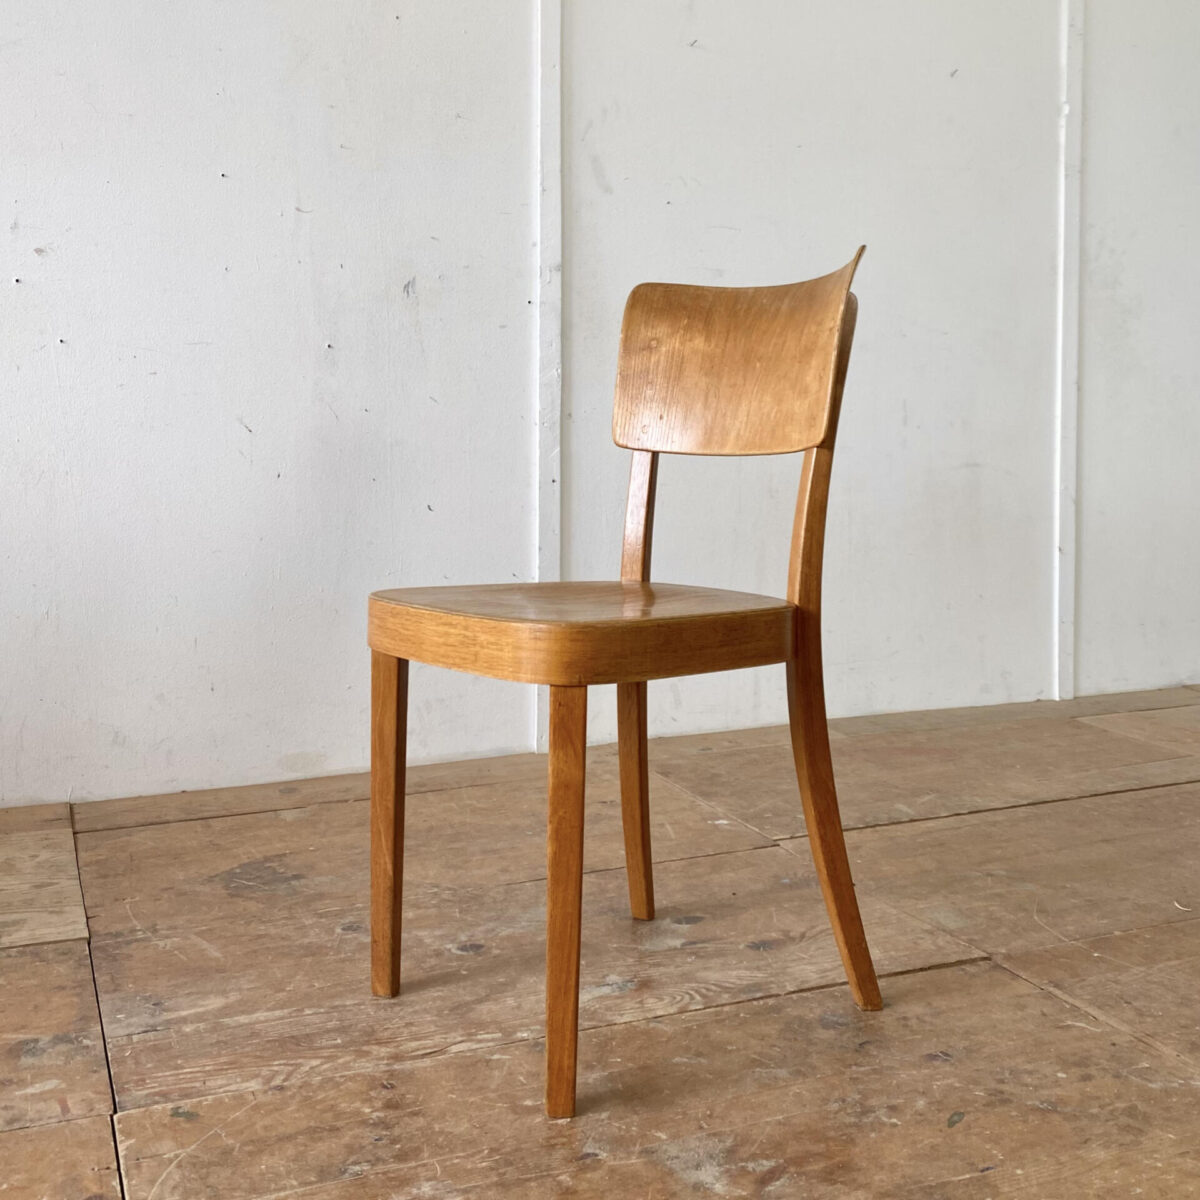 Deuxieme.shop swissdesign Horgen Glarus Beizenstühle. Preis pro Stuhl. Die Stühle sind in stabilem restaurierten Zustand, Sitzfläche und Lehne Sperrholz formverleimt, die restlichen Teile sind aus Buchenholz Dampfgebogen. Das Stuhlmodell, mit Namen Safran, wird heute noch produziert. 